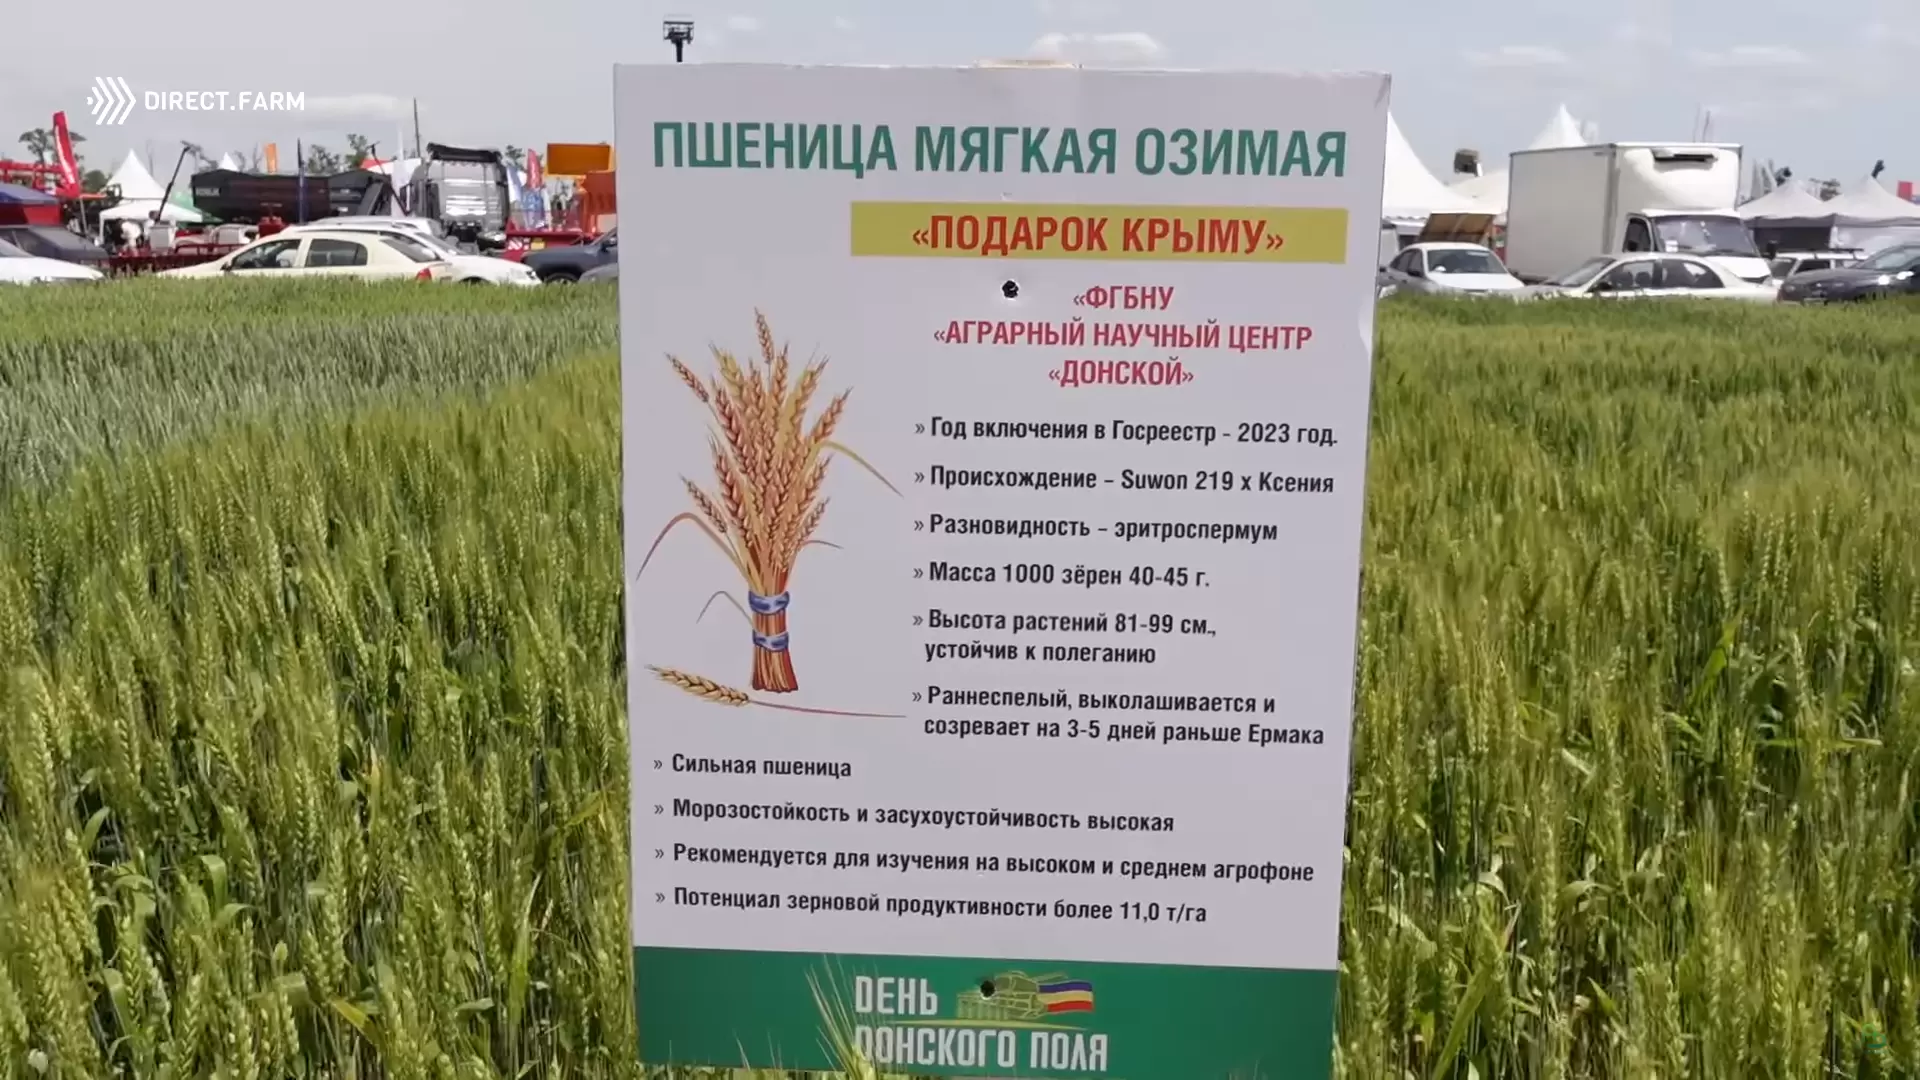 Новые сорта озимой пшеницы зерноградской селекции АНЦ Донской